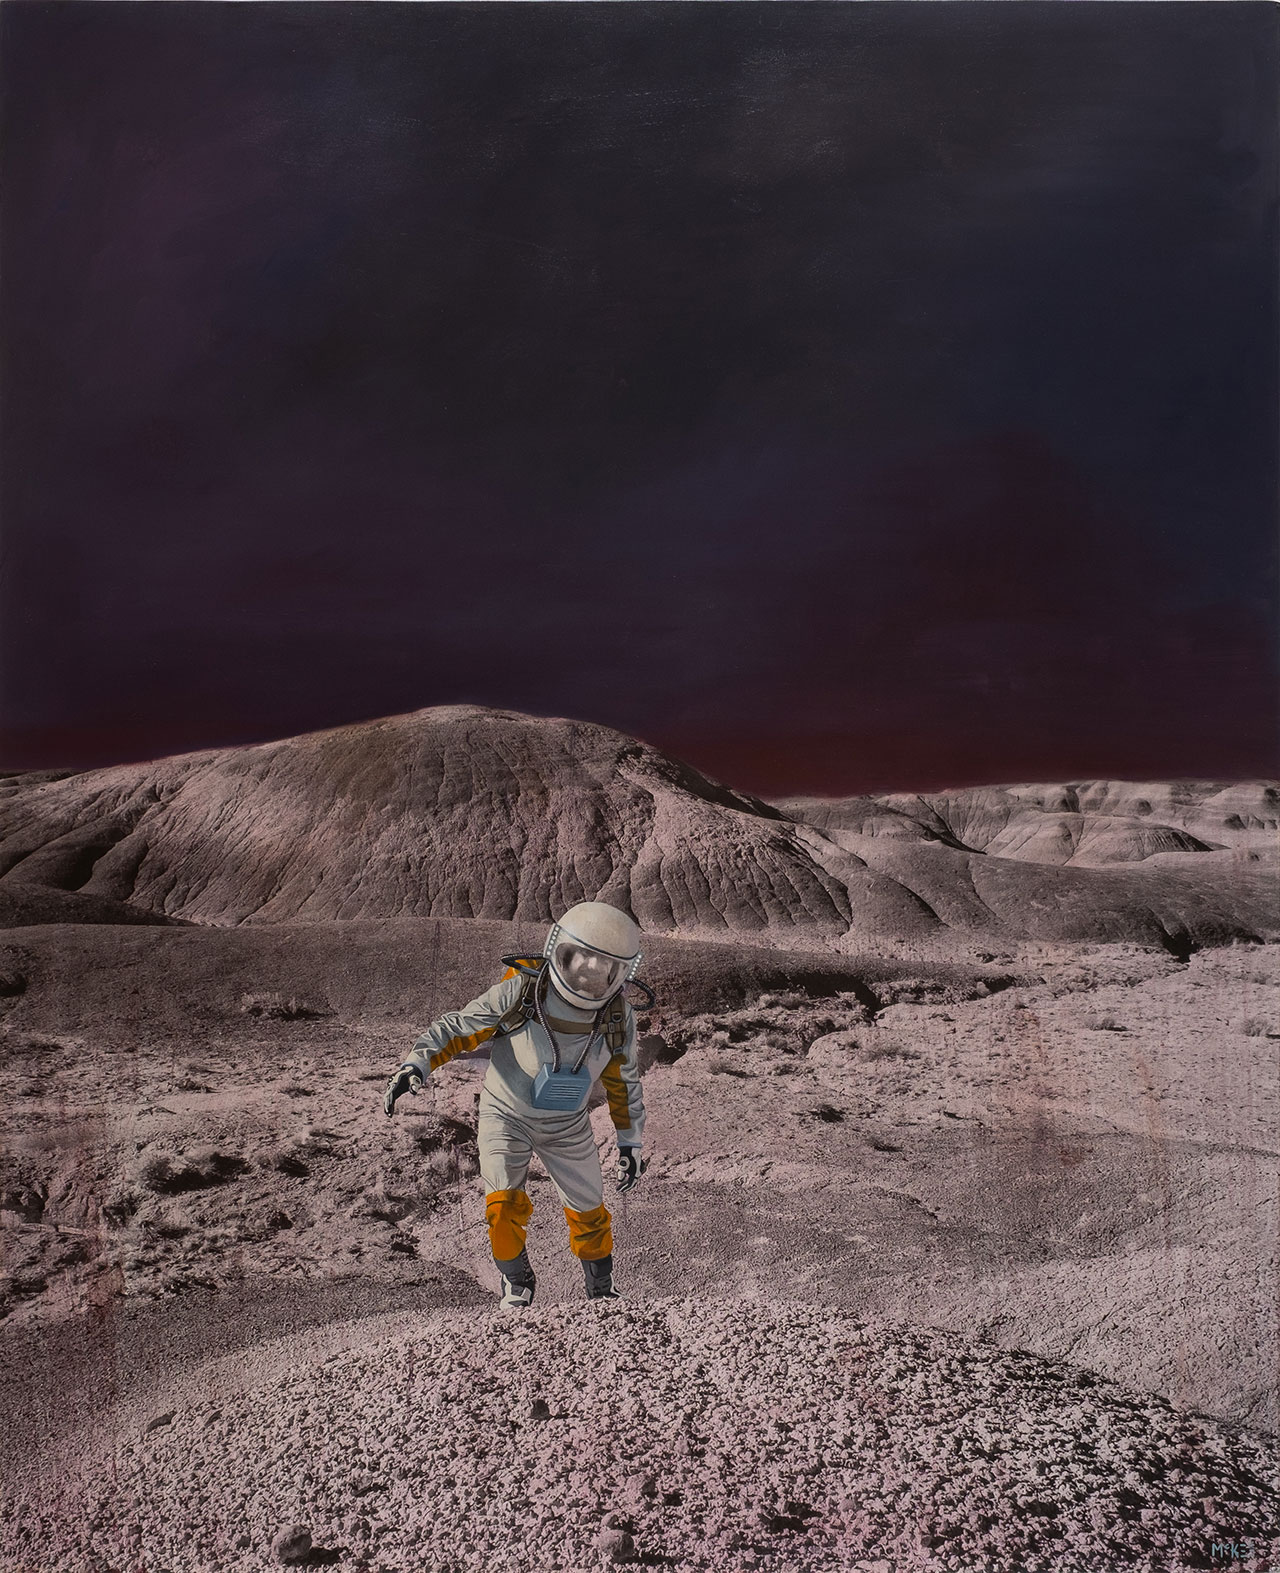 凯西·麦基，反馈回路（来自“机器停止”系列），照片，布面油画。 160 x 130 厘米，2018 年。